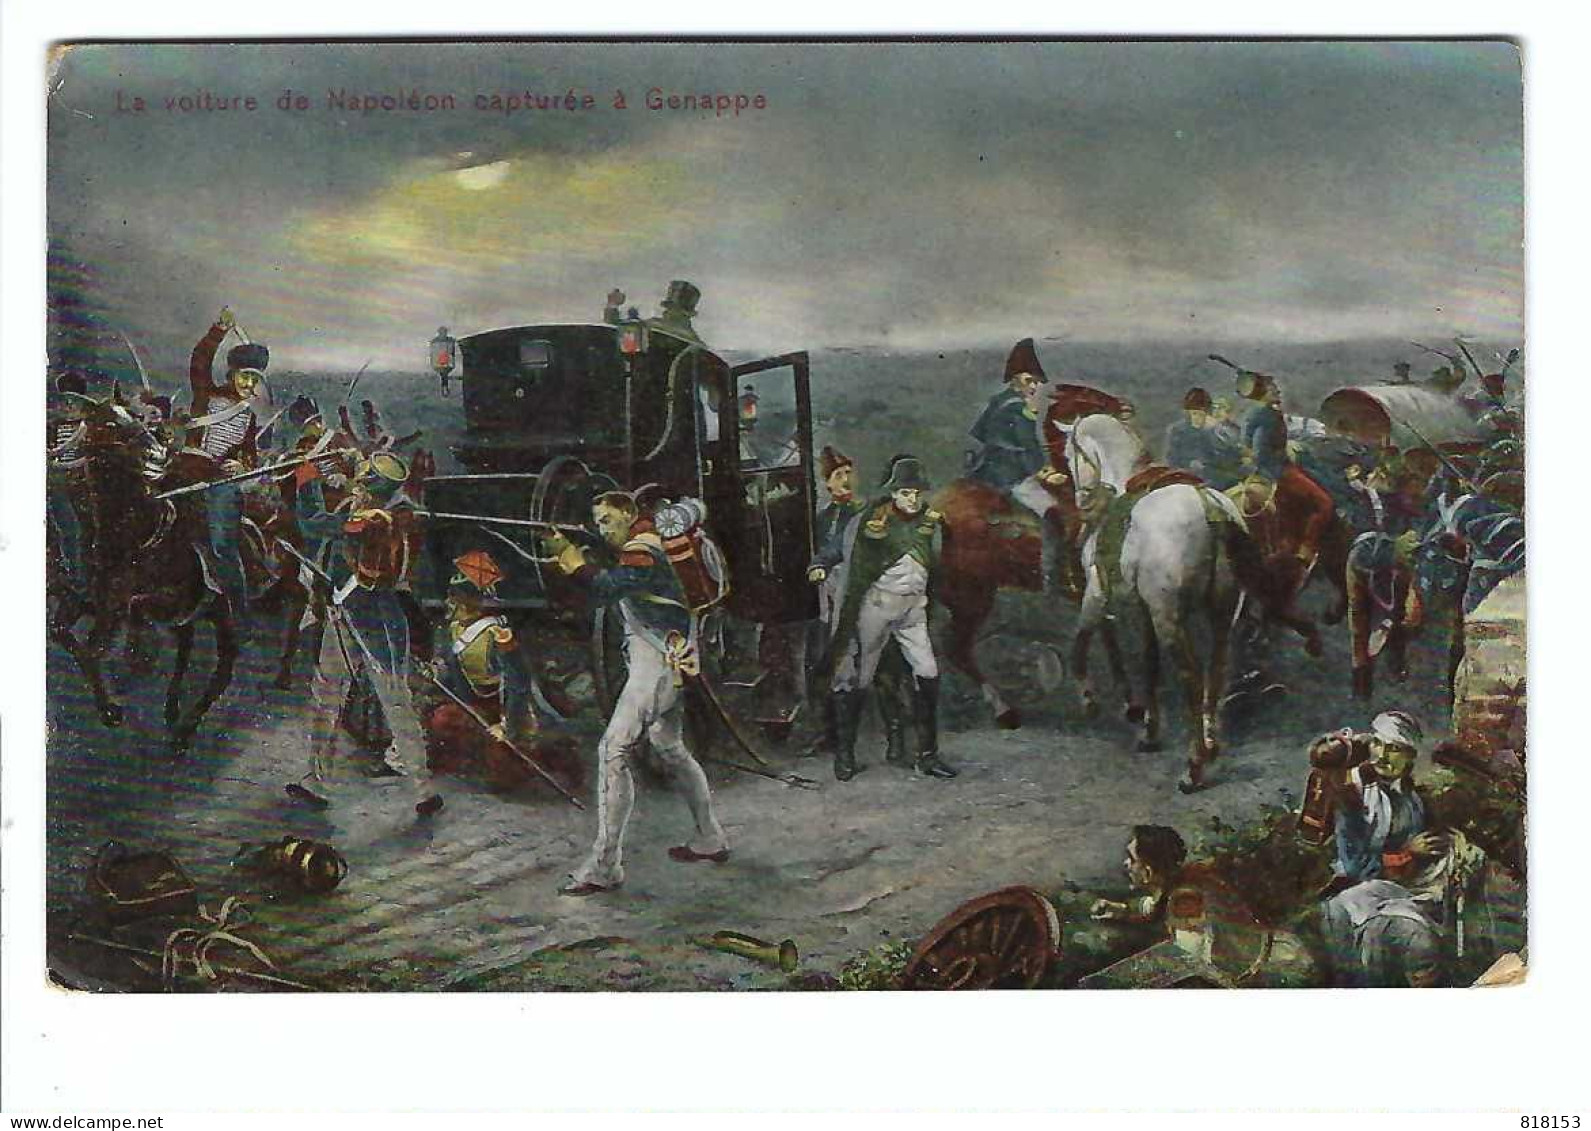 La Voiture De Napoléon Capturée à Genappe - Genappe